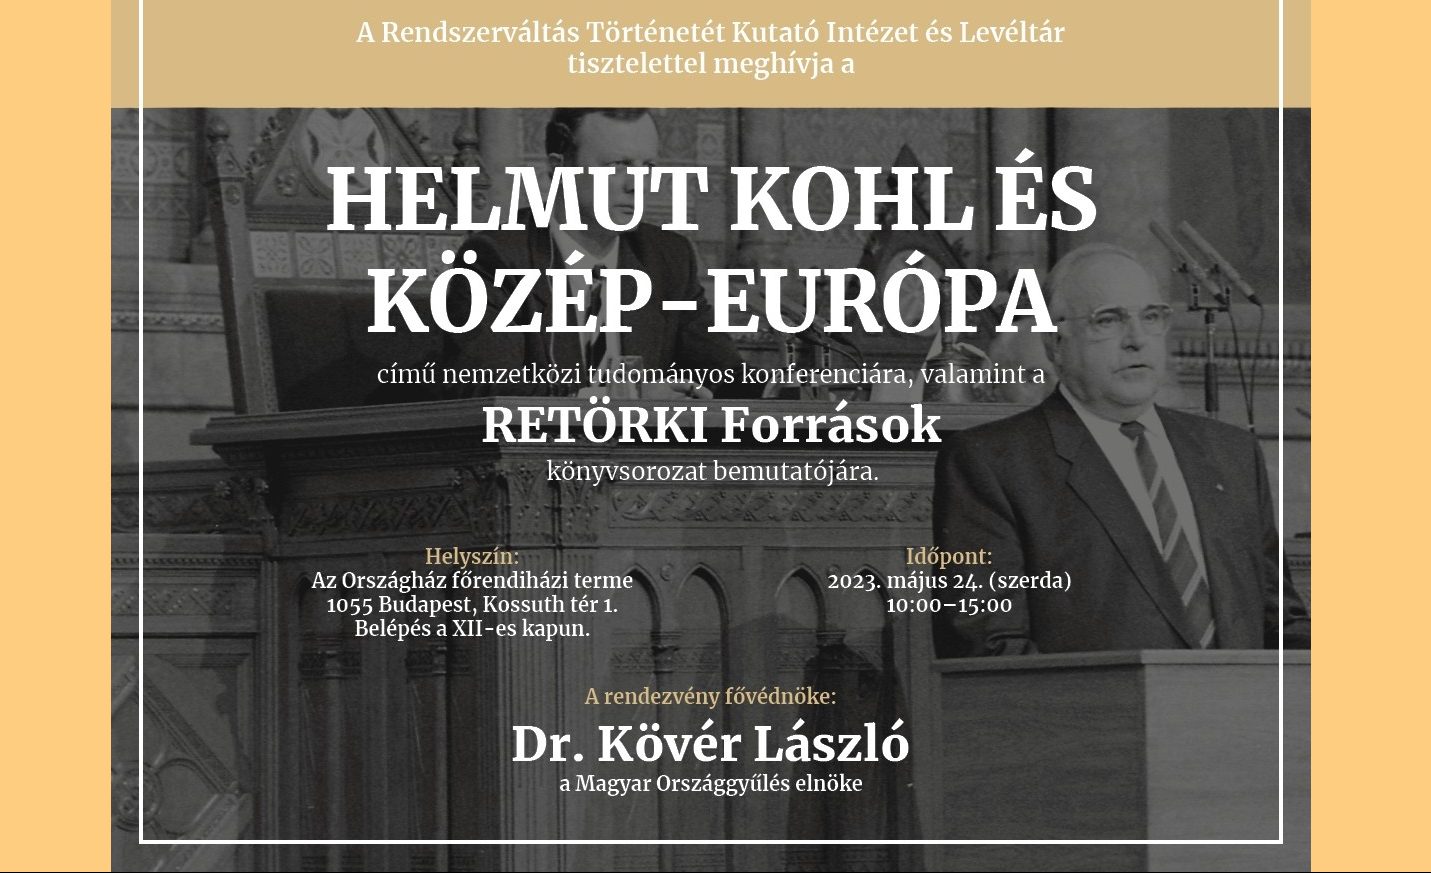 Helmut Kohl und Mitteleuropa - Internationale Konferenz im Parlamentsgebäude